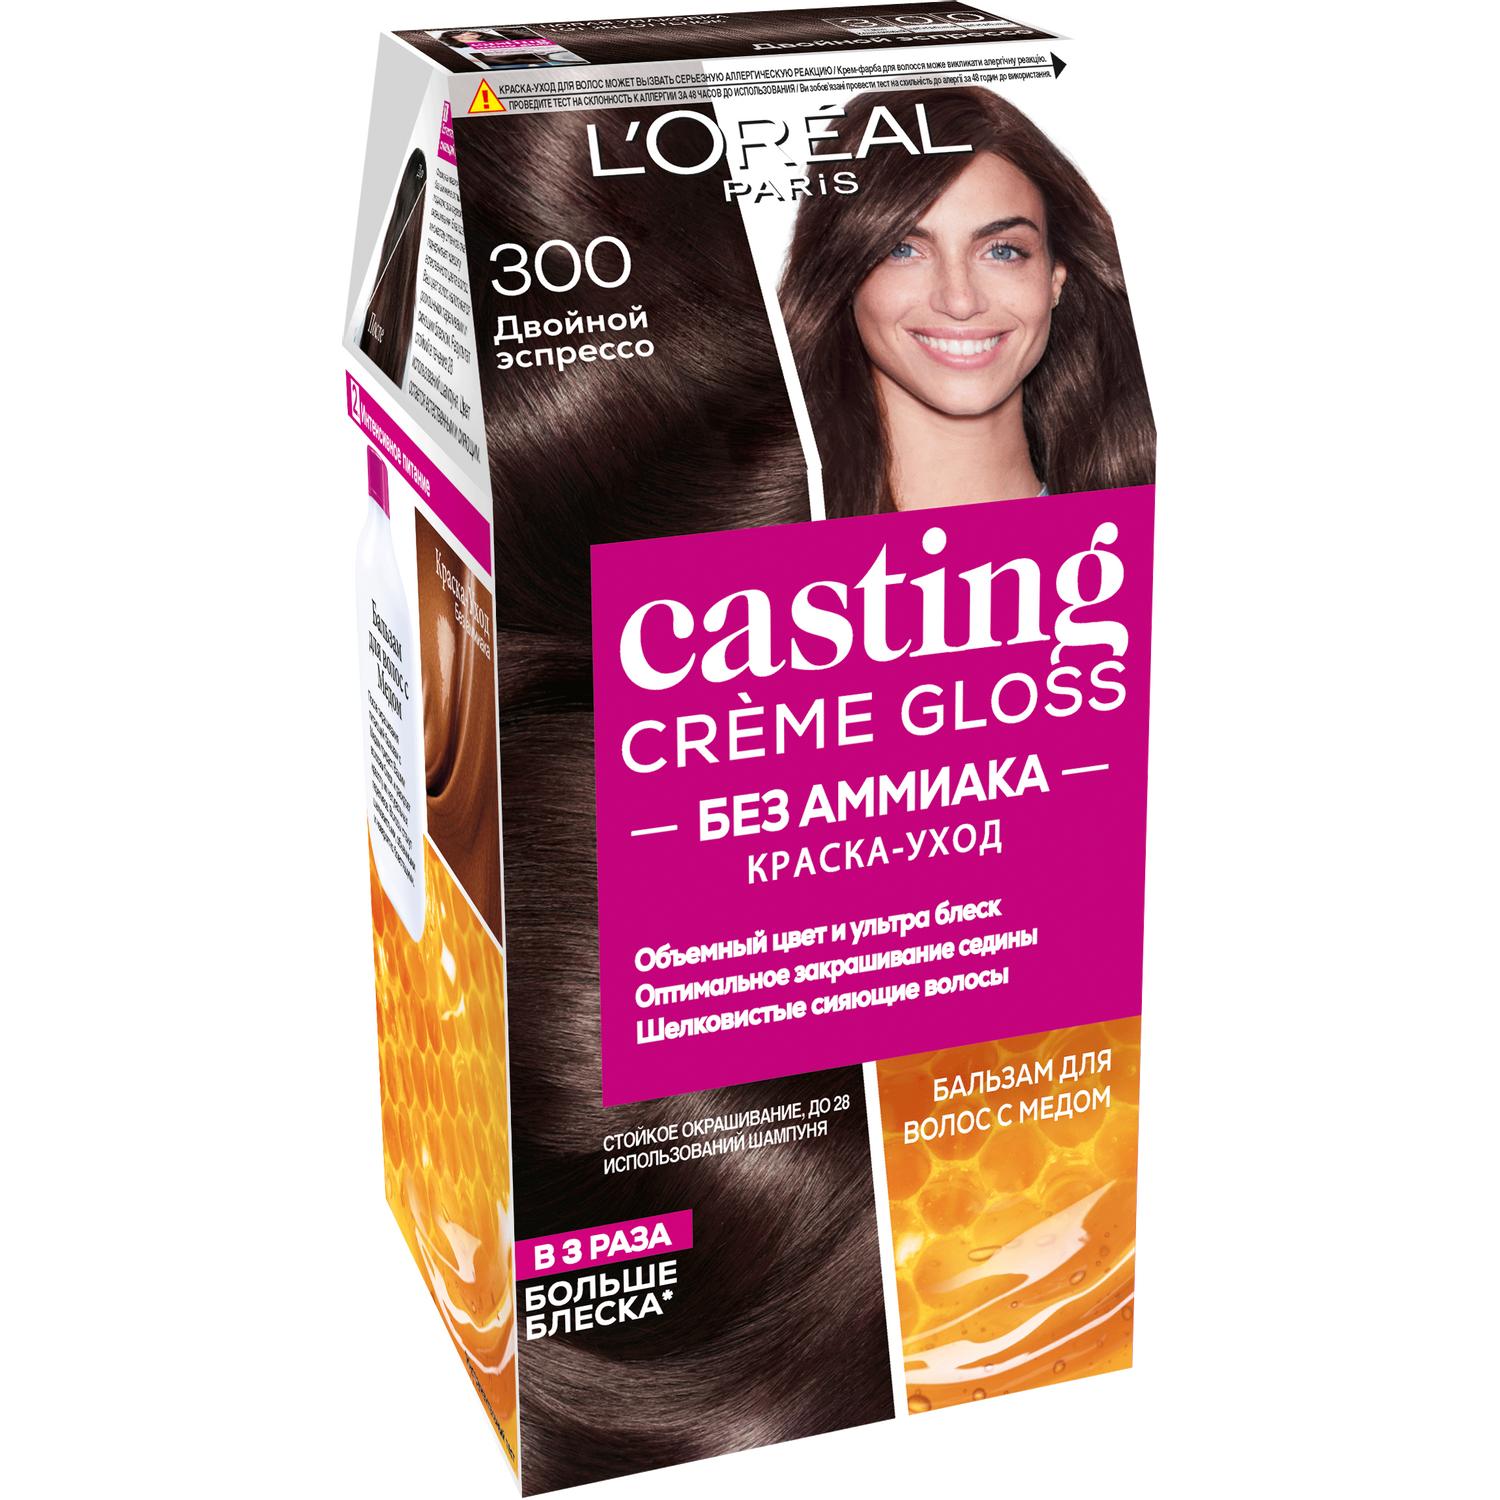 фото Краска для волос l'oreal paris casting creme gloss 300 двойной эспрессо l'oréal paris